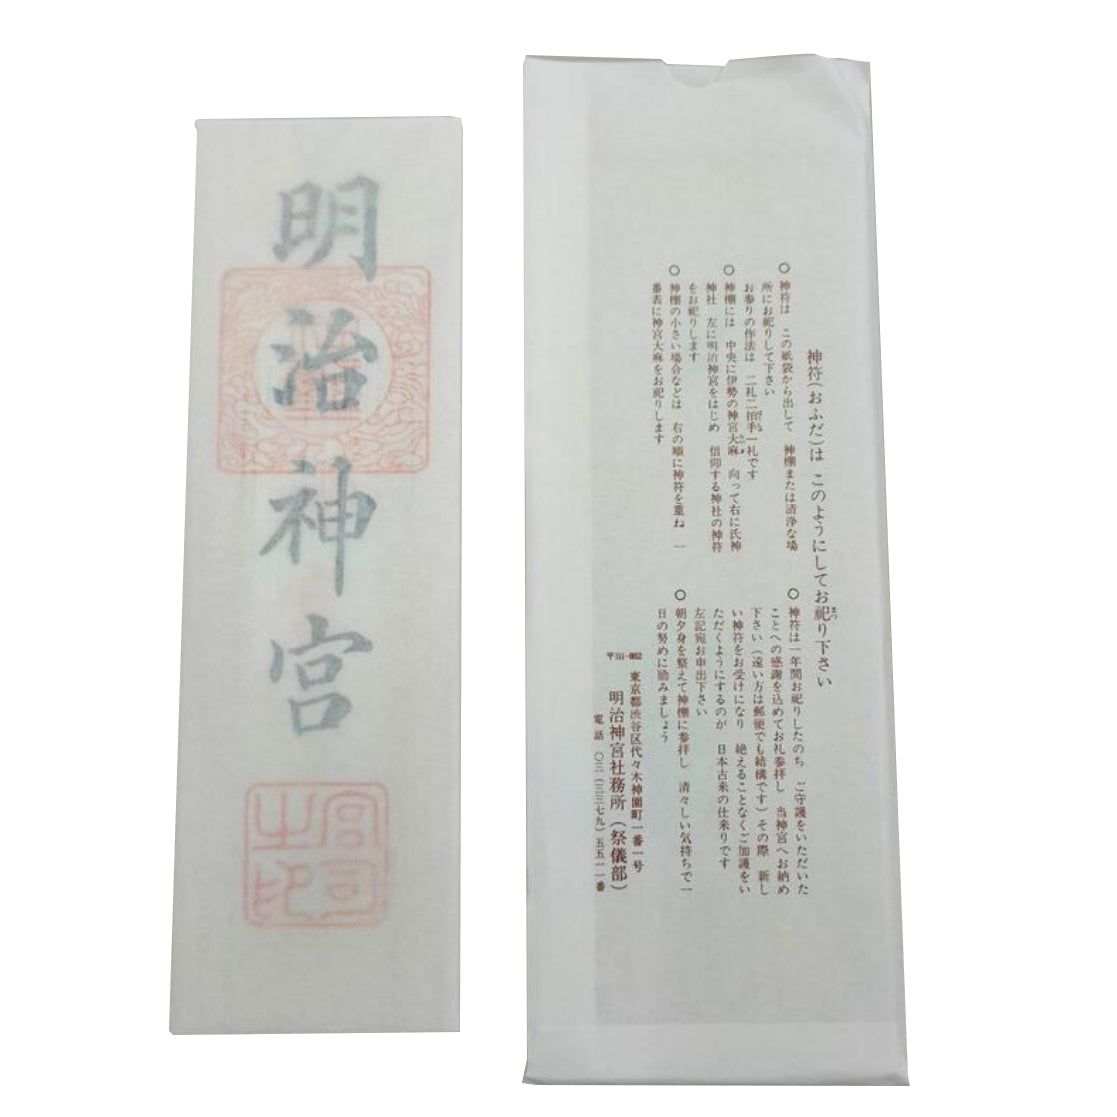 Japan Meiji Jingu，Special talisman (Meiji Jingu character)talisman，Paper tag packaging